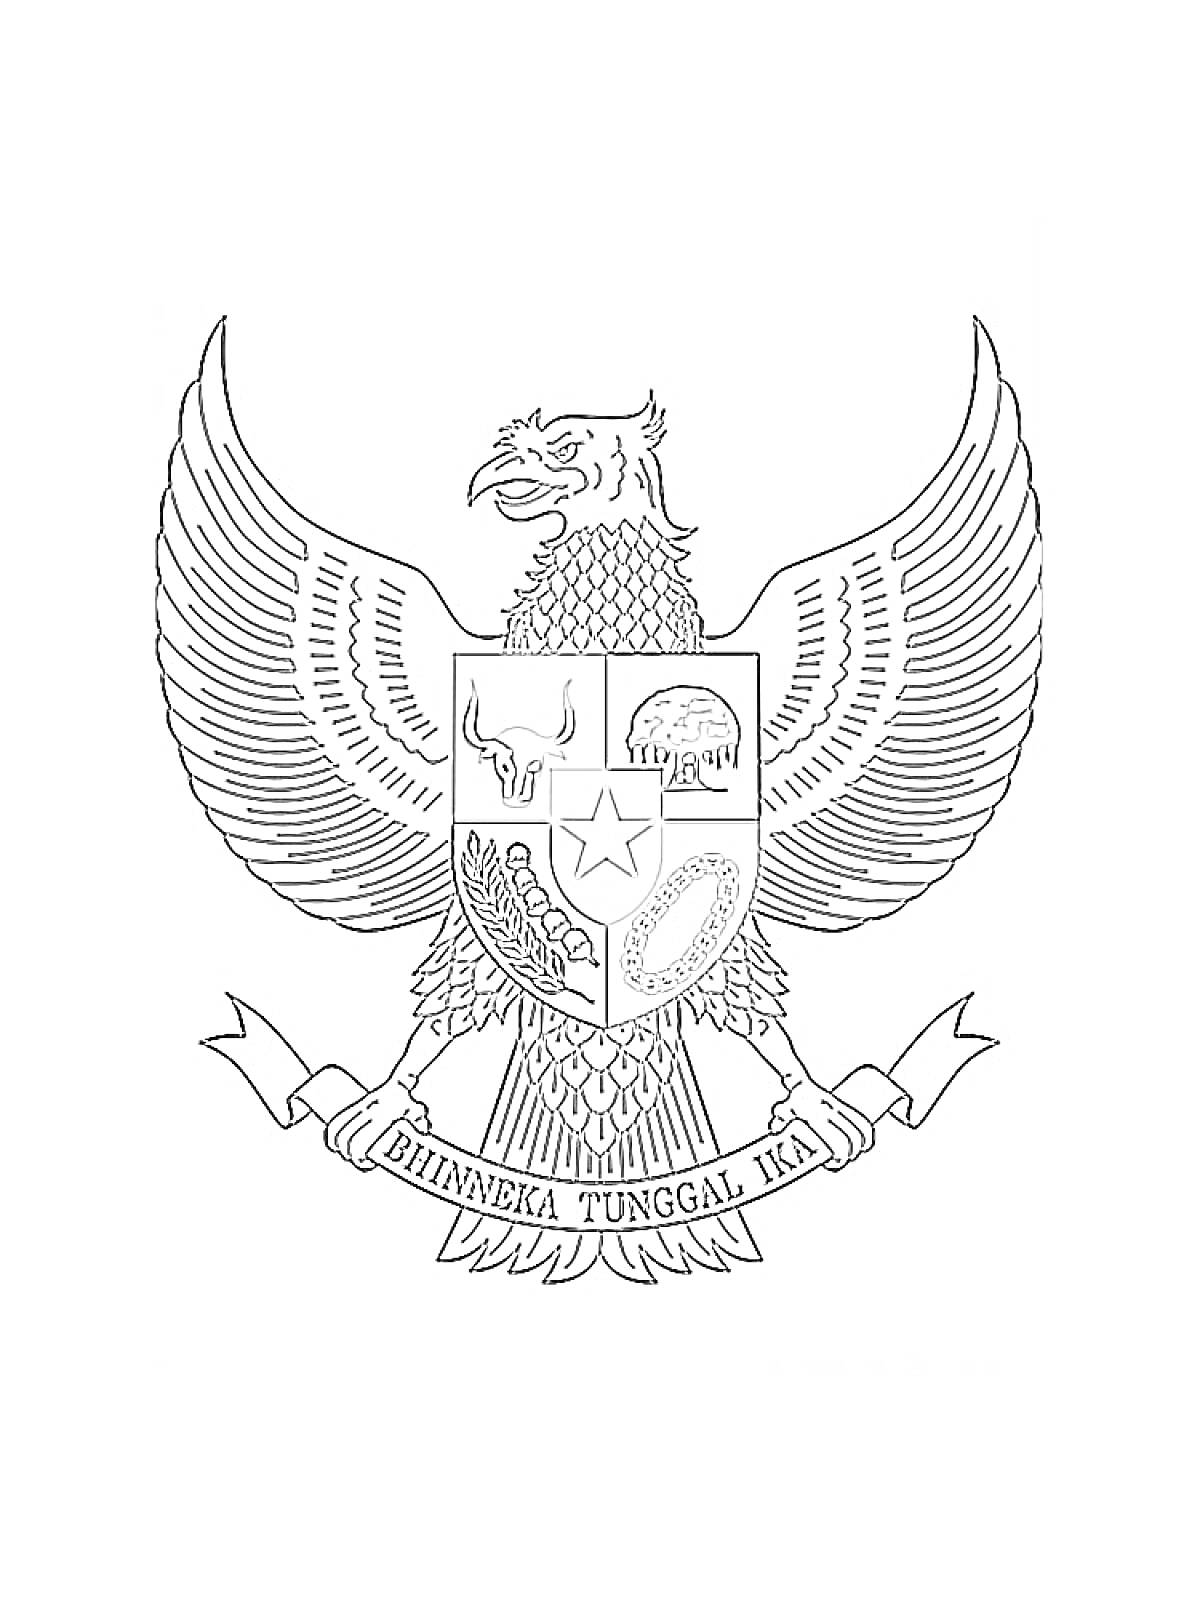 Раскраска Герб Индонезии (Garuda Pancasila). Орел с крыльями, щит с пятью символами (бык, дерево баньяна, звезда, цепь, рис и хлопок), лента с надписью 